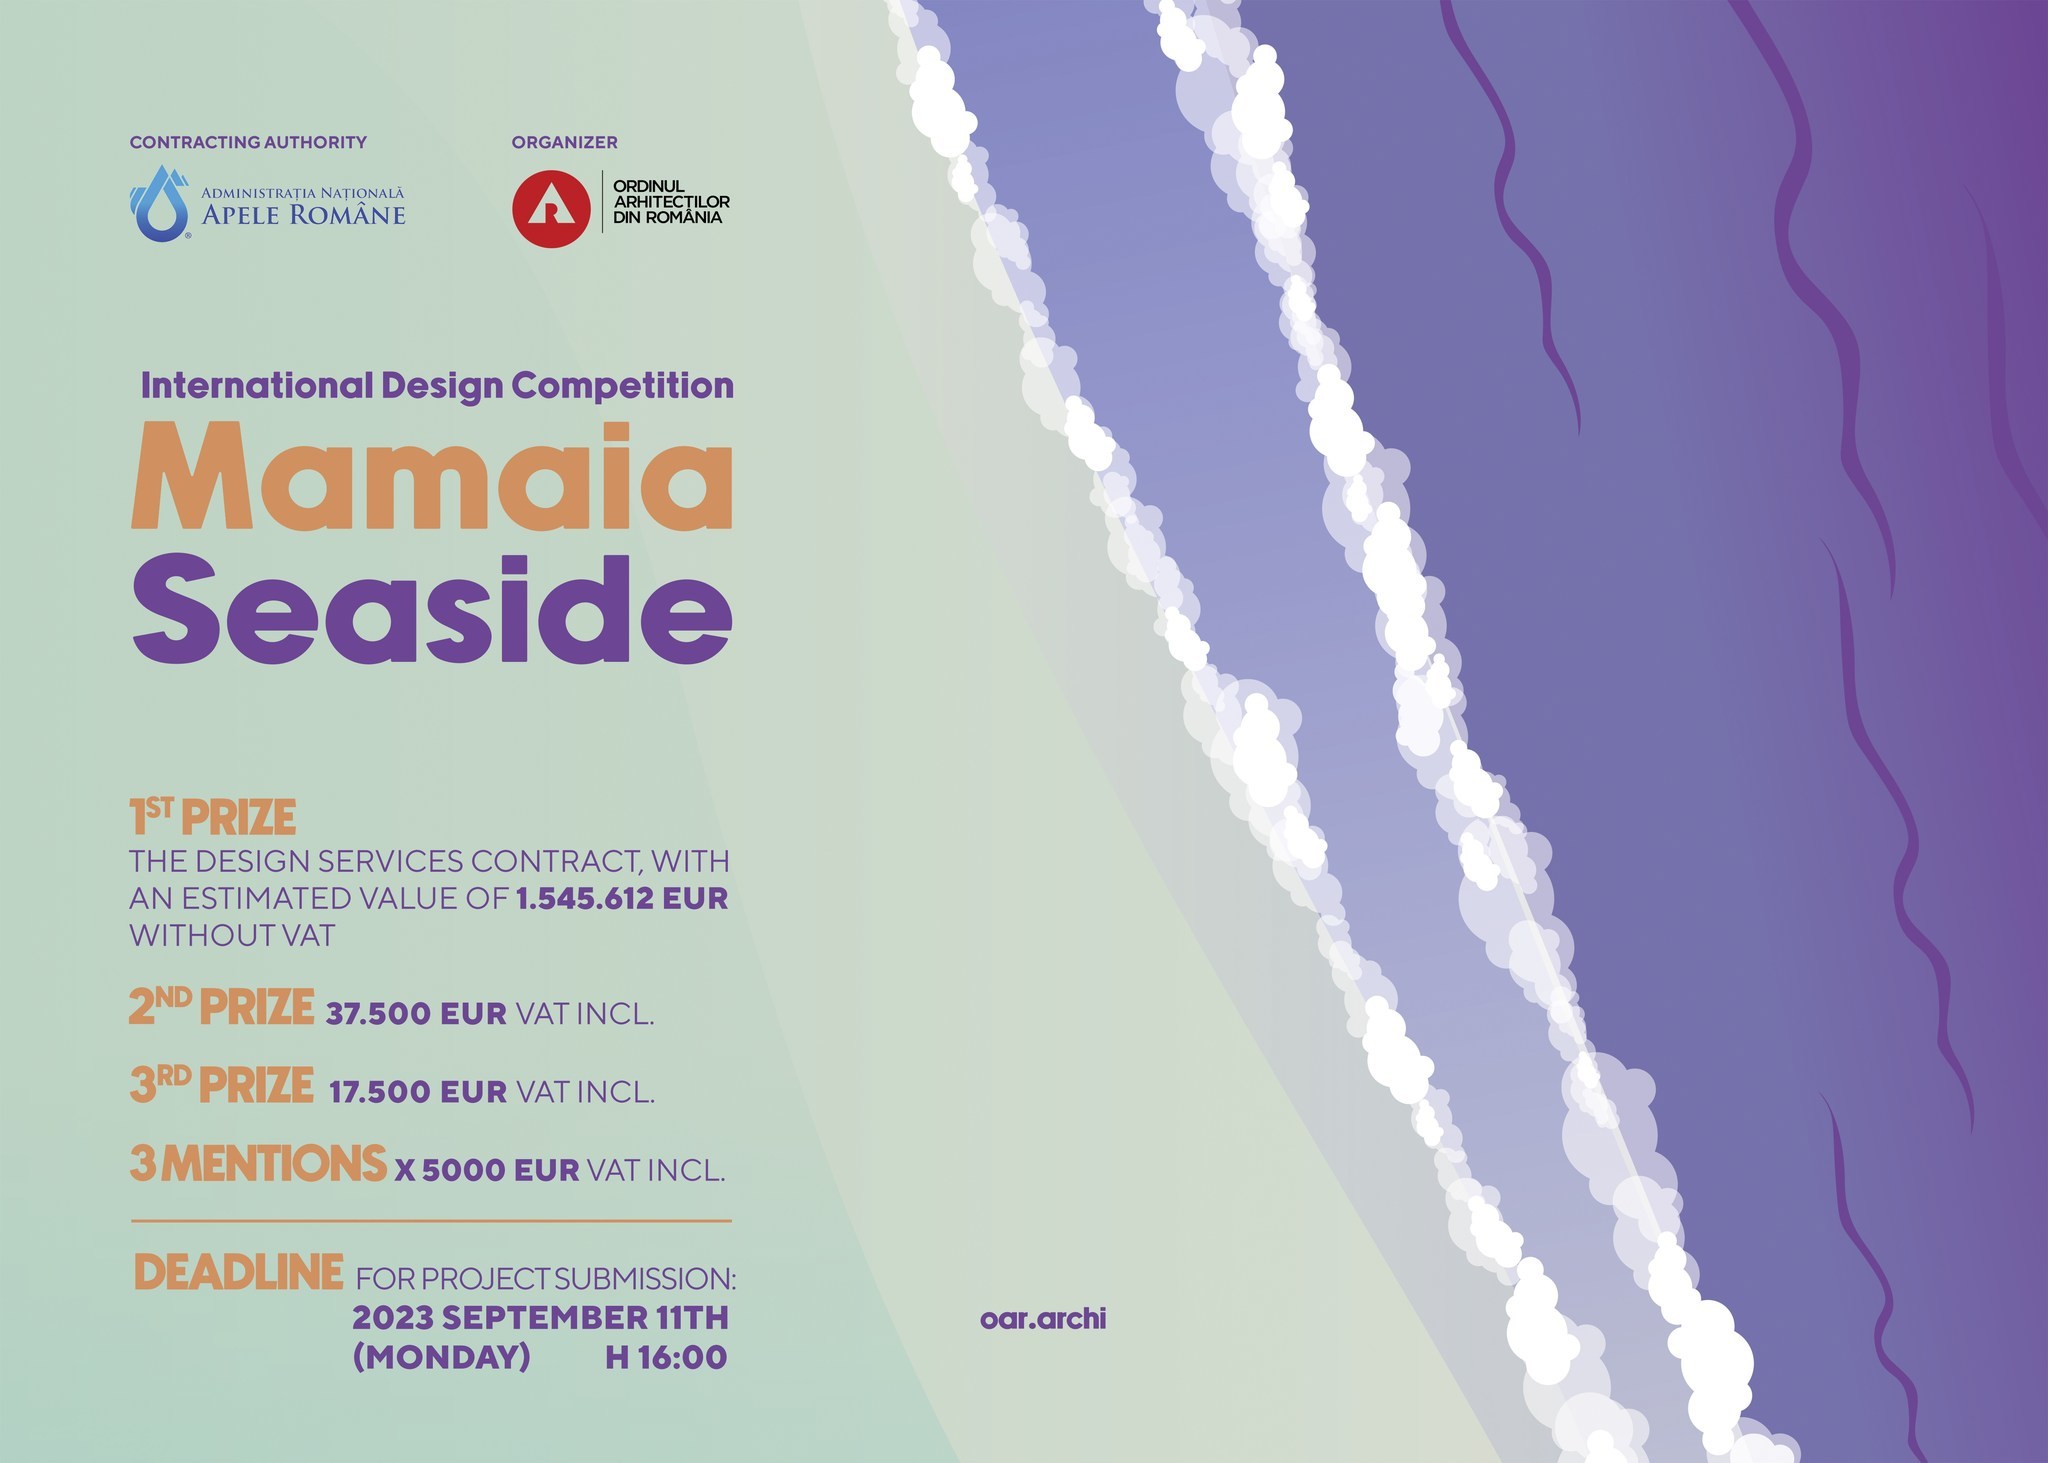 Administraţia Naţională ”Apele Române” au lansat un concurs internaţional pentru amenajarea plajei din Mamaia